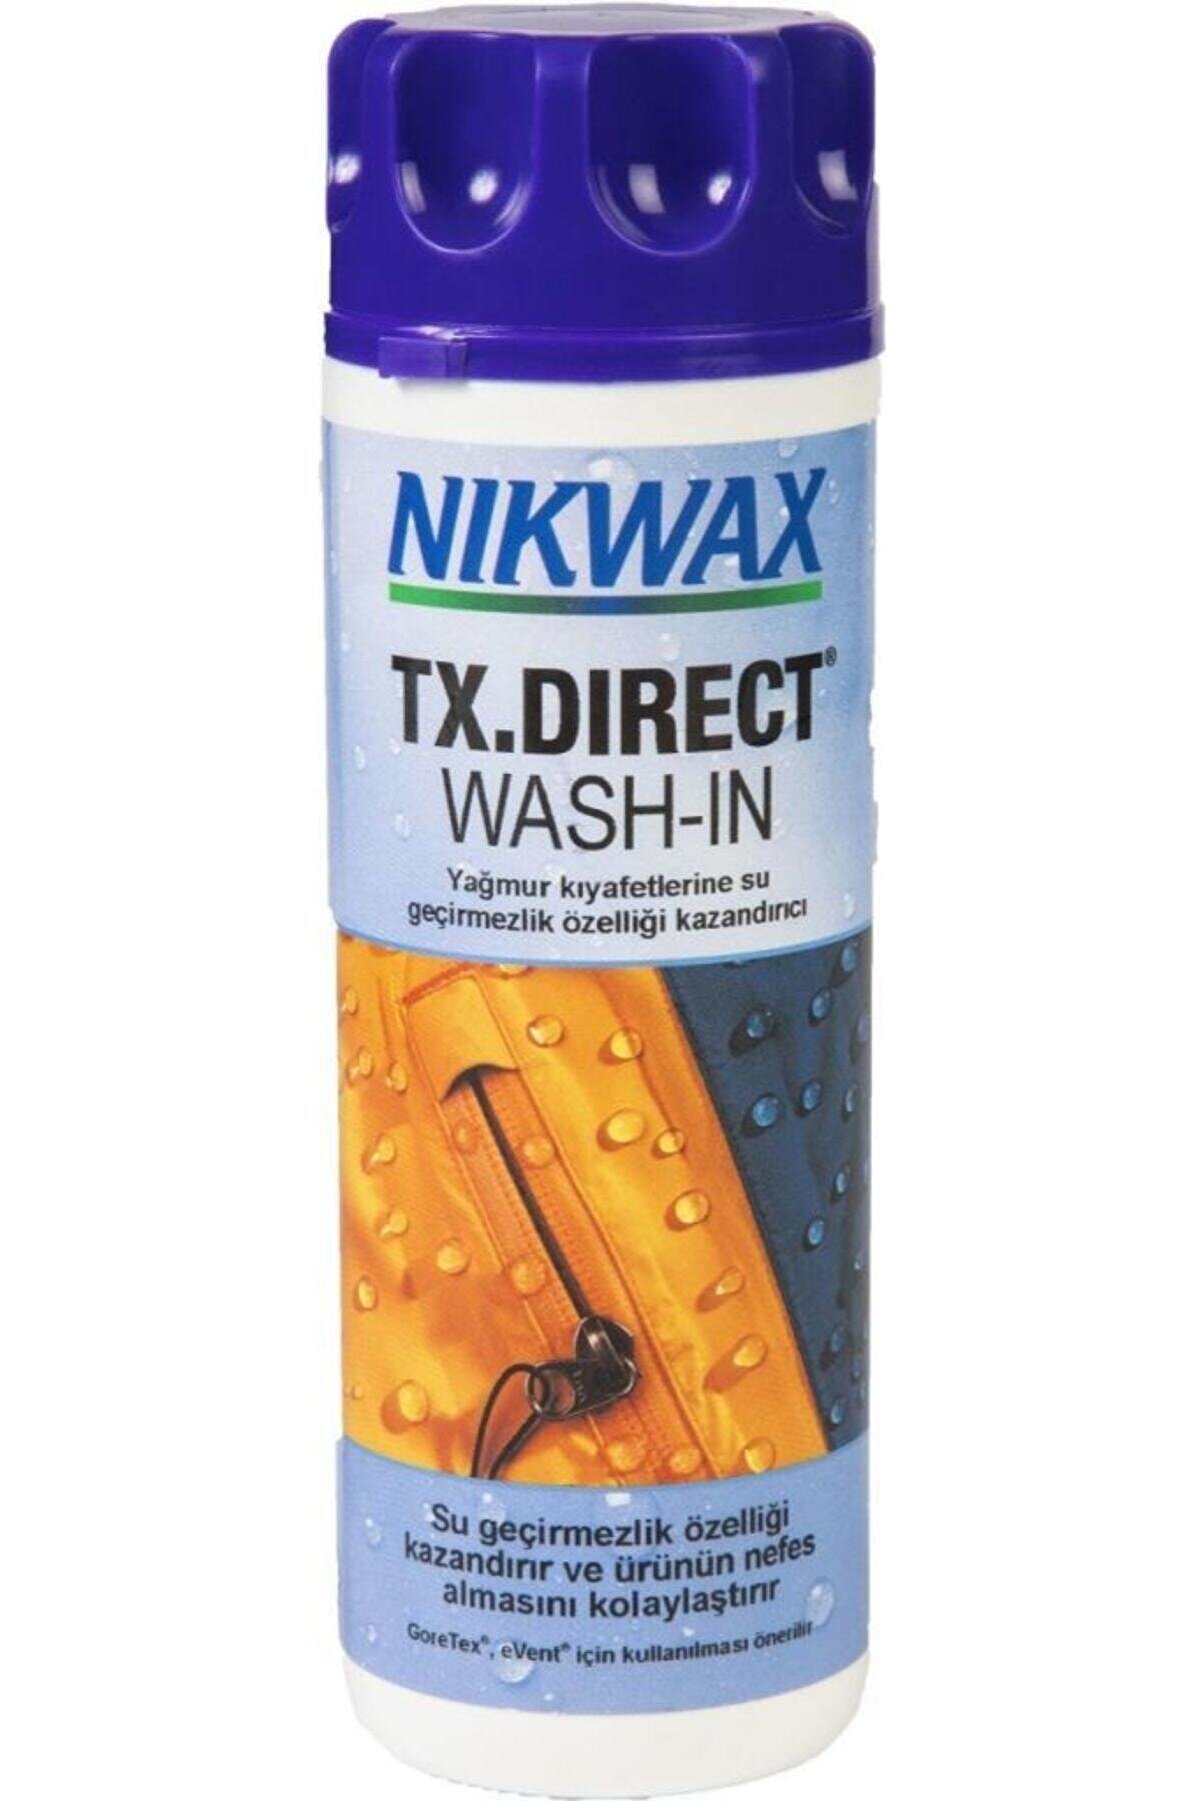 NIKWAX Tx.direct Wash-in Teknik Malzeme Su Geçirmezlik Yıkama